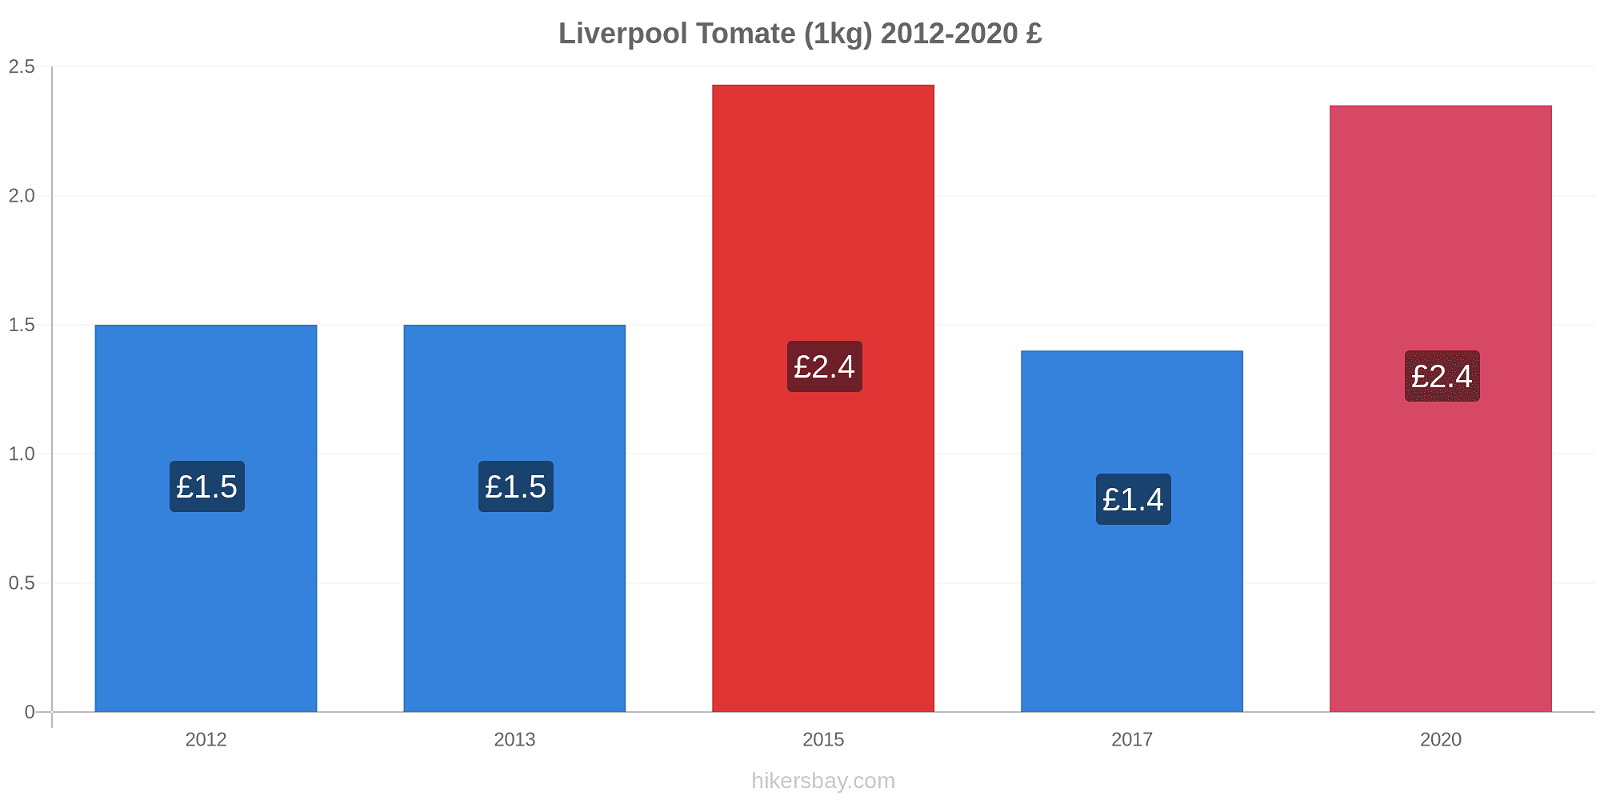 Liverpool variação de preço Tomate (1kg) hikersbay.com